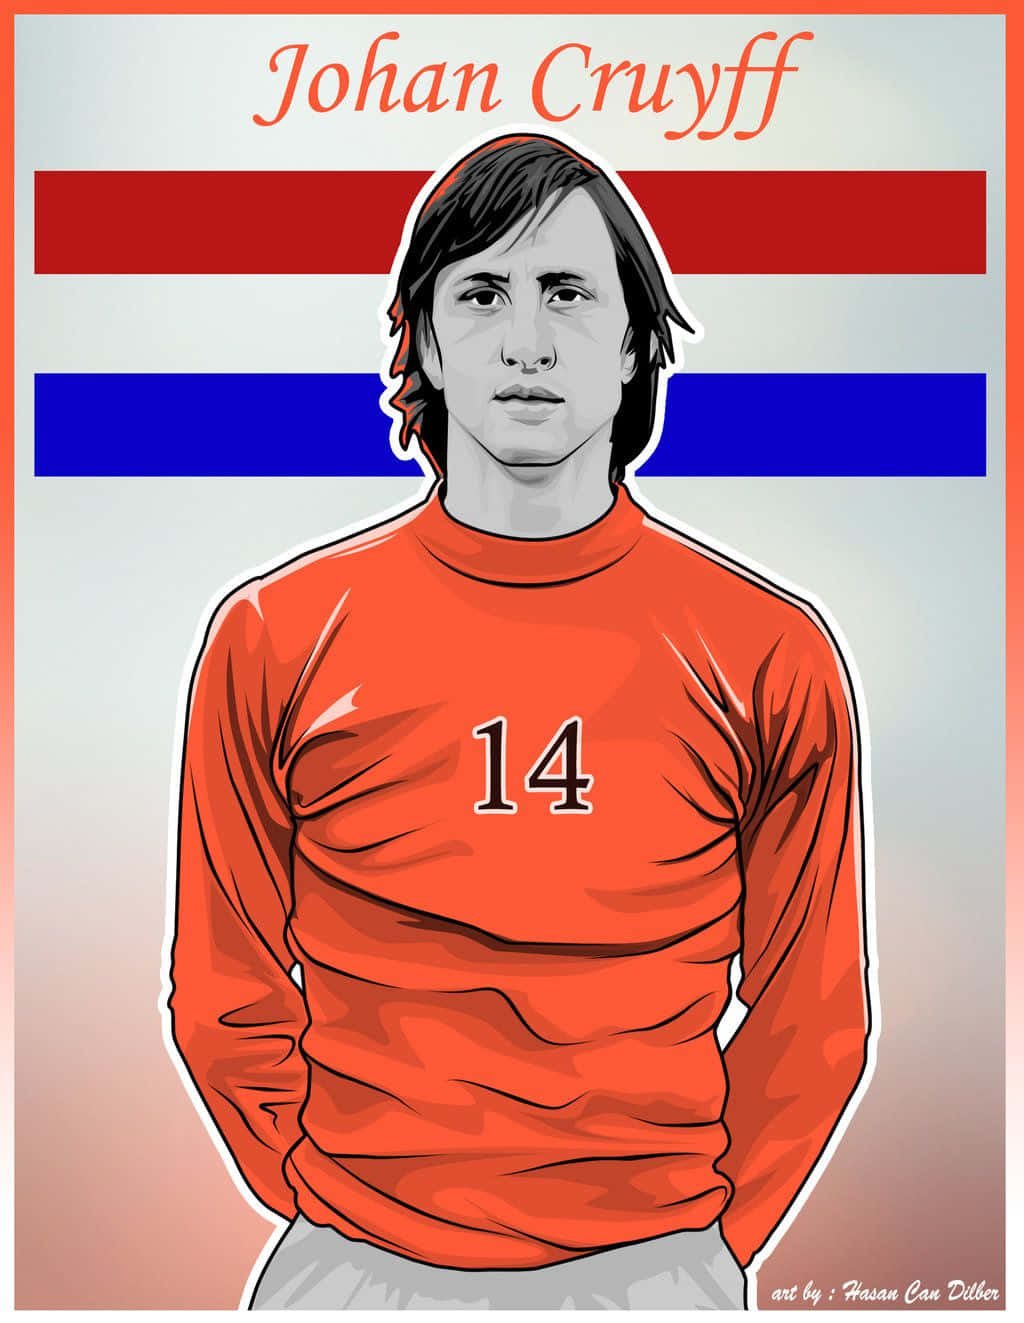 Pósterde Arte Digital De Johan Cruyff En Países Bajos Fondo de pantalla